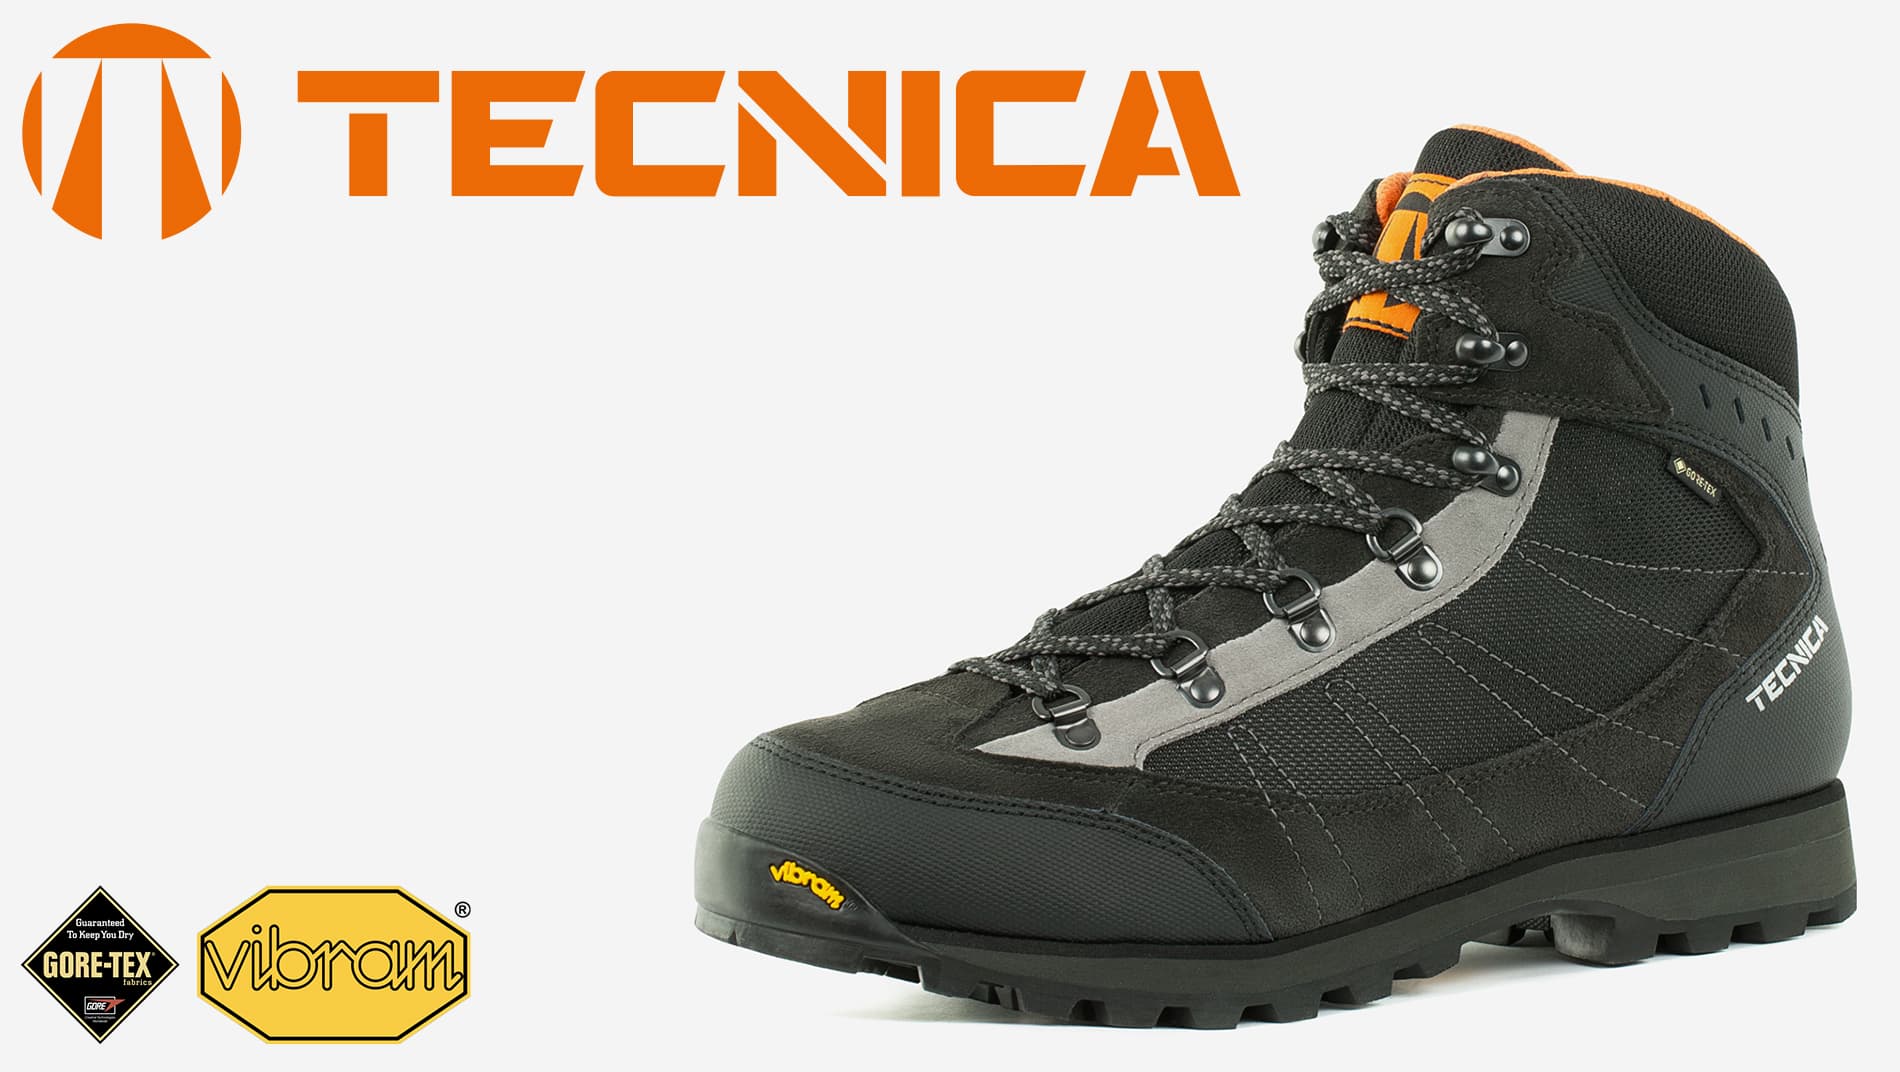 Ботинки мужские Tecnica Makalu IV GTX MS черный/оранжевый цвет — купить за18199 руб., отзывы в интернет-магазине Спортмастер